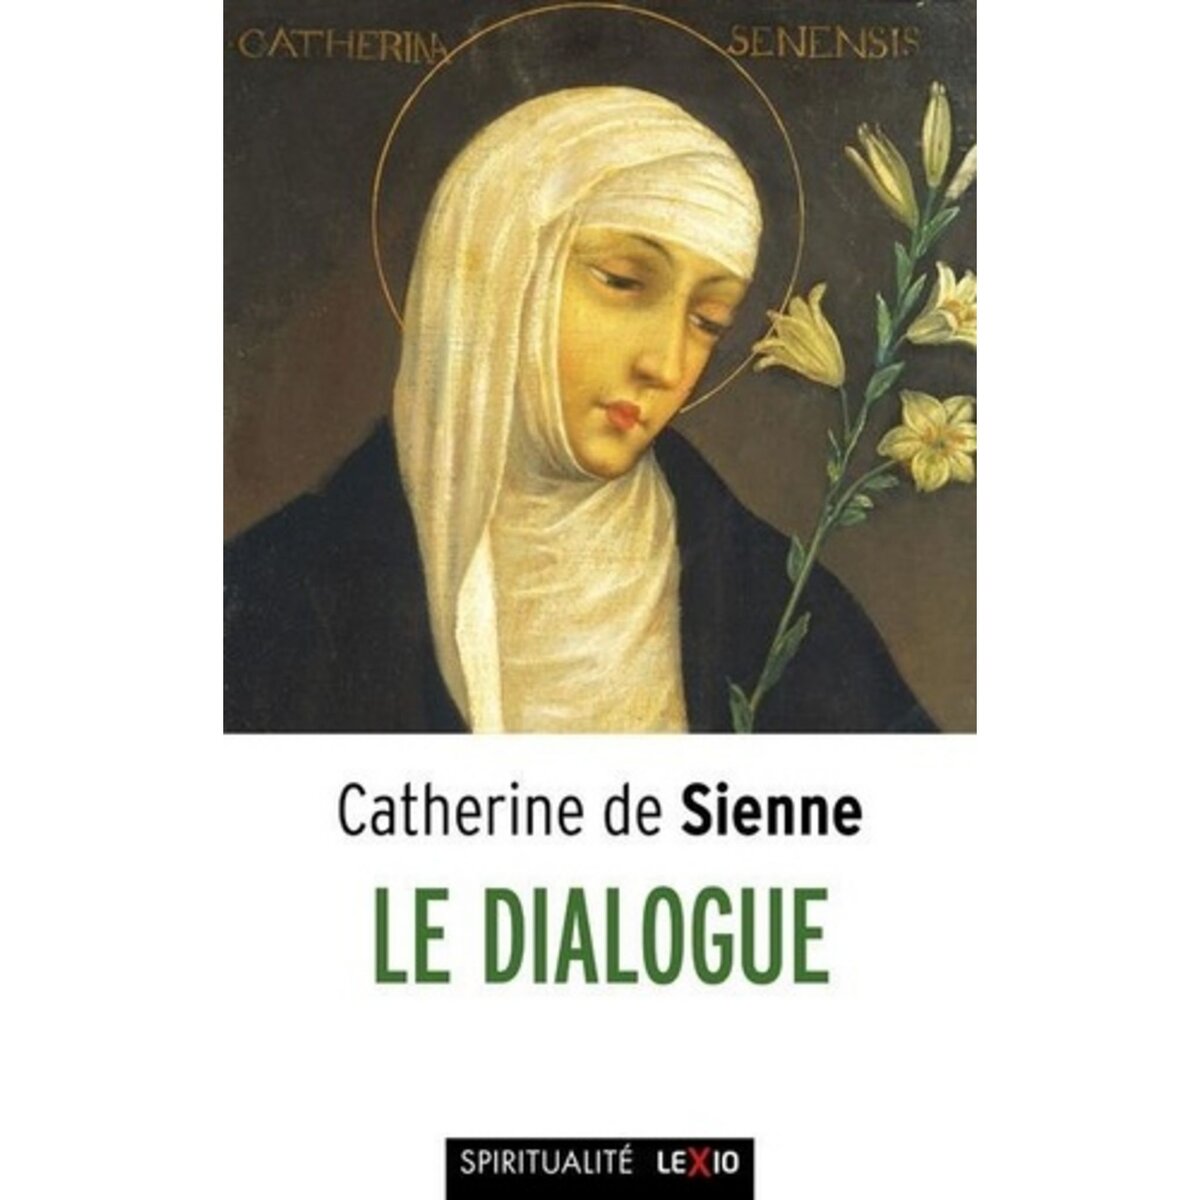  LE DIALOGUE. 2E EDITION, Catherine de Sienne